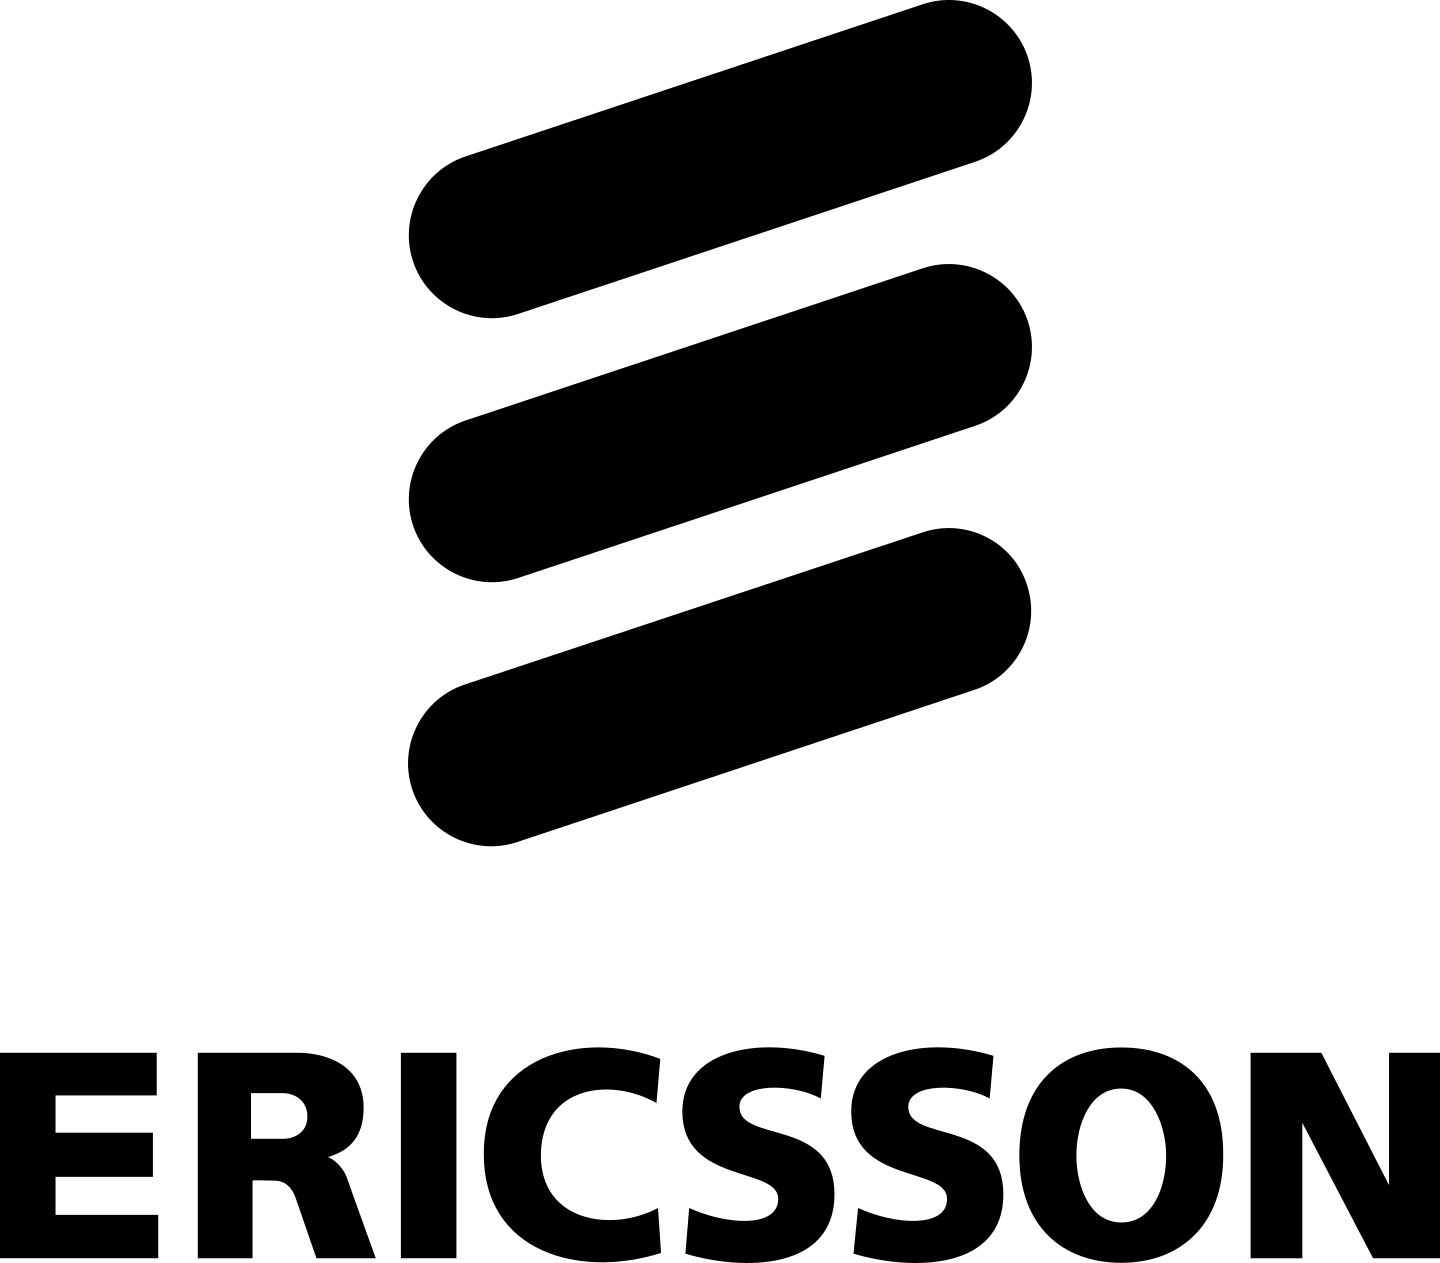 ericsson logo 1 1 - Ericsson Logo